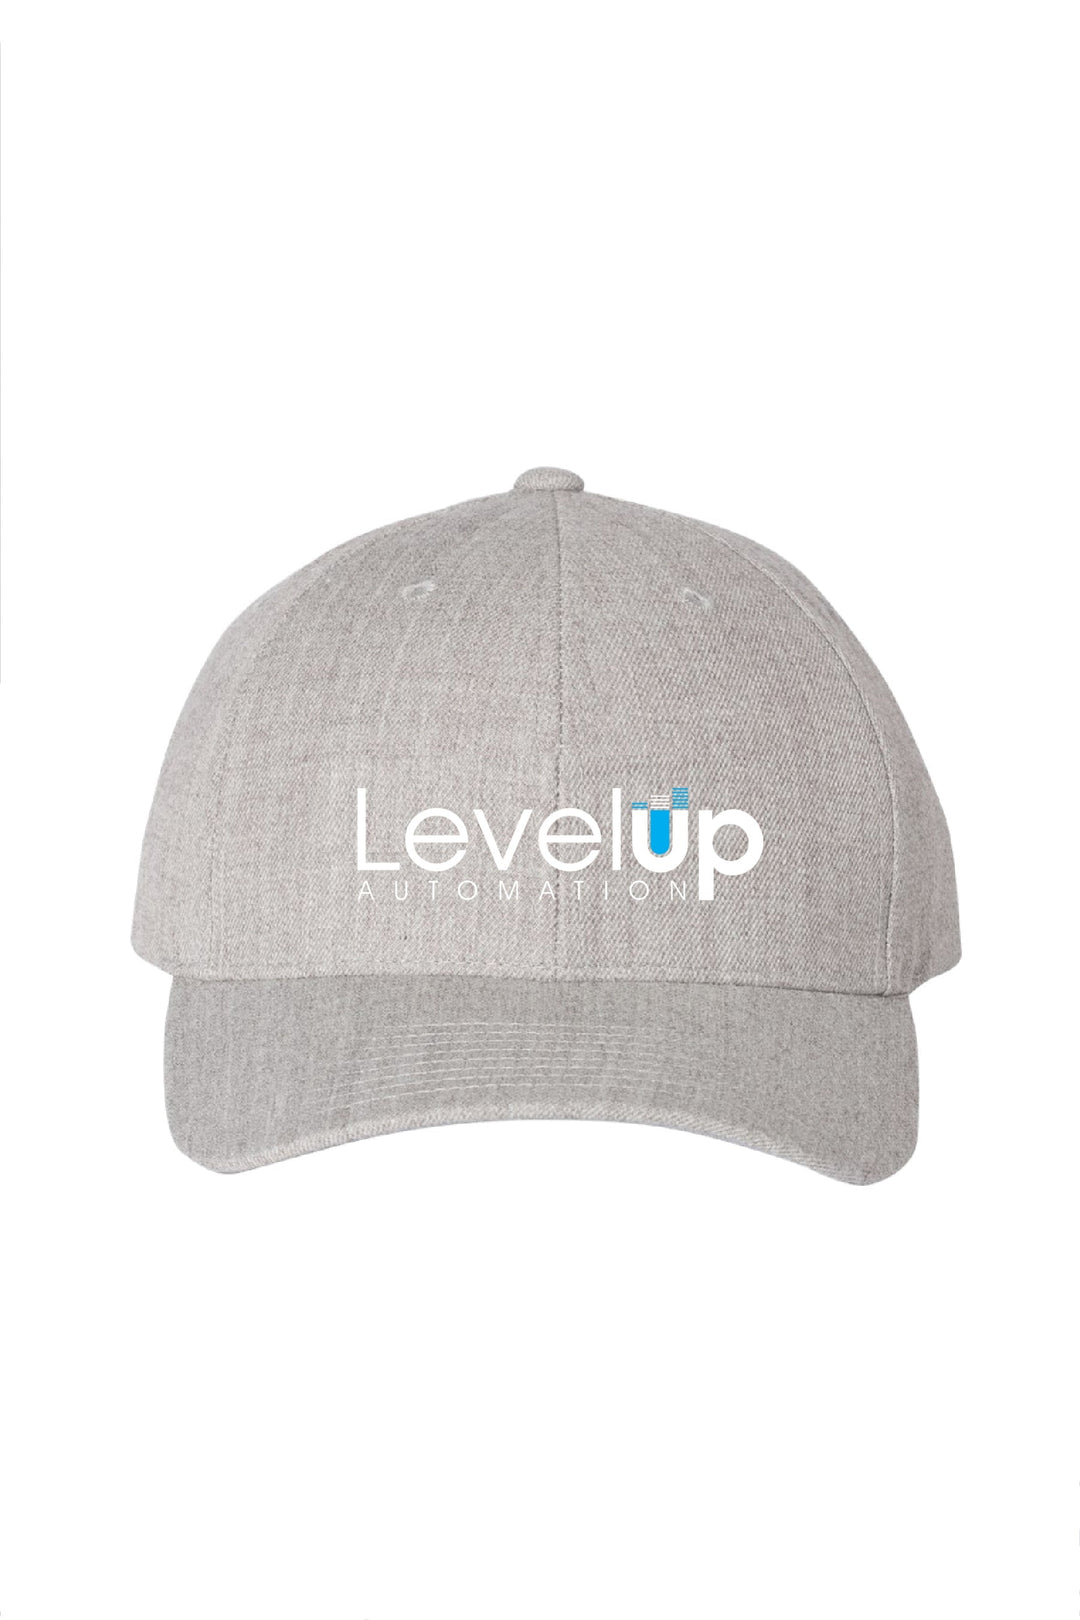 Level Up Automation Level Up Snapback Hat